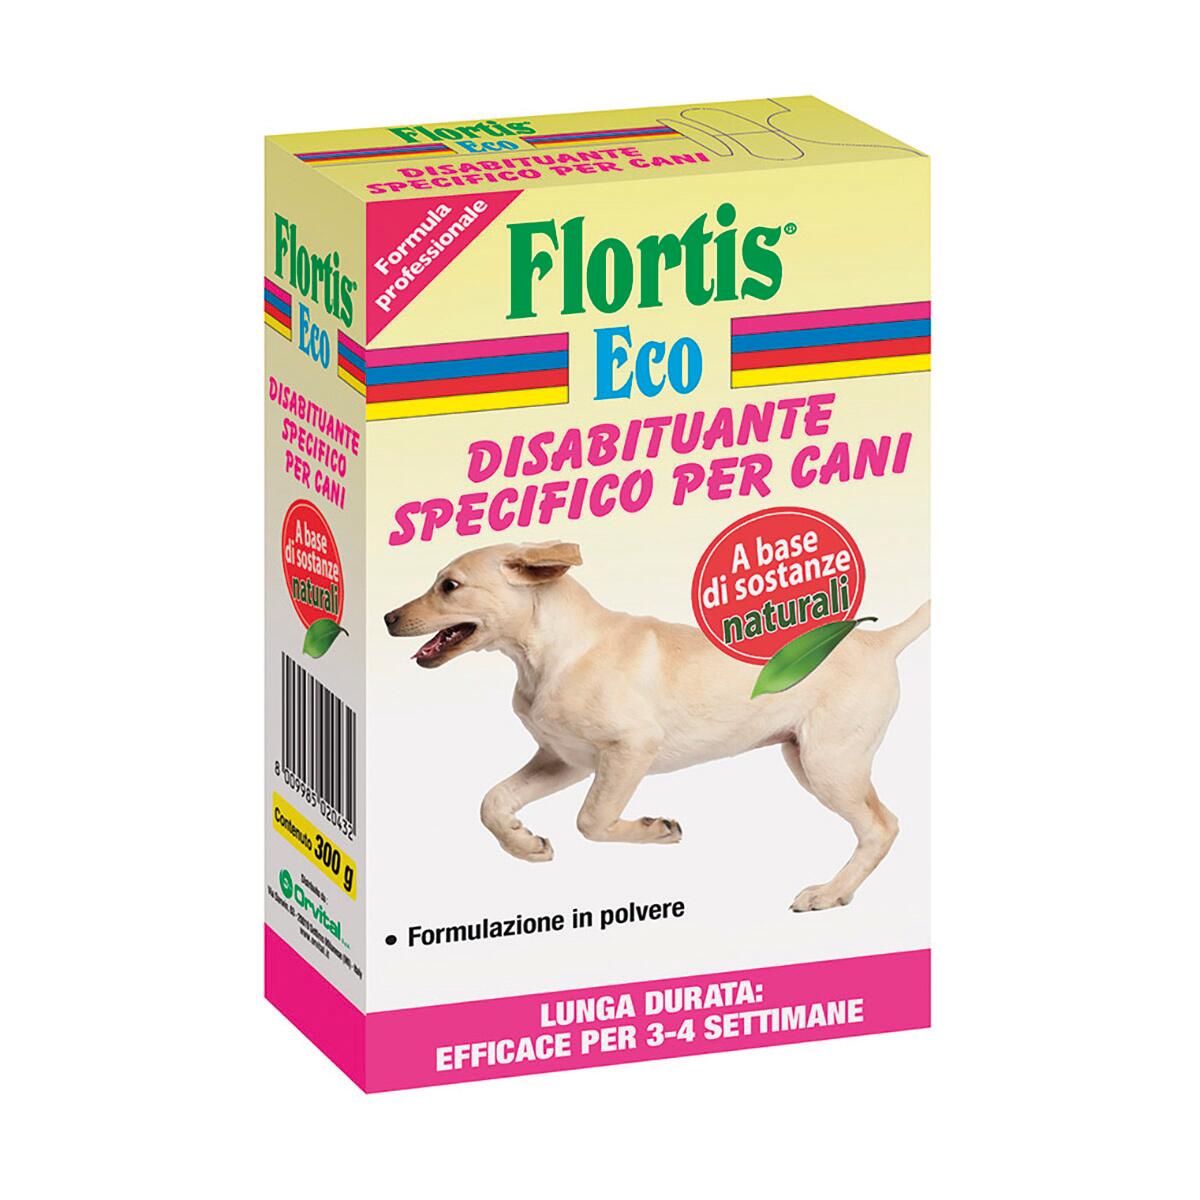 Disabituante polvere Flortis Specifico Per Cani 300 g